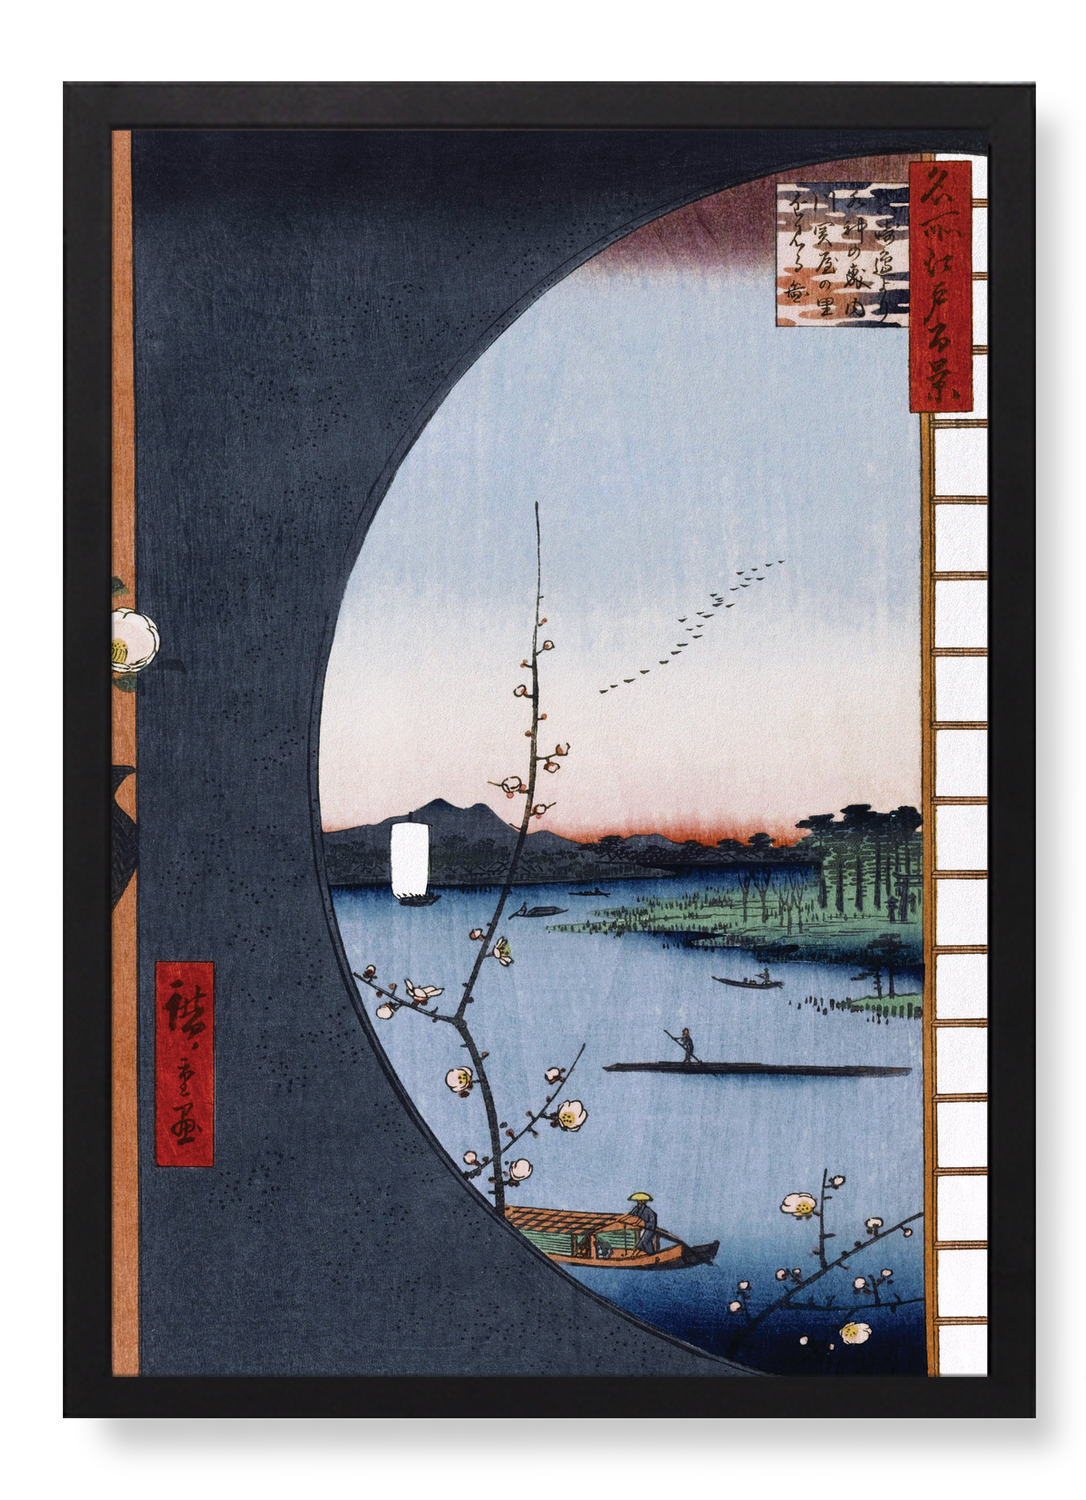 VIEW FROM MASSAKI (1857)